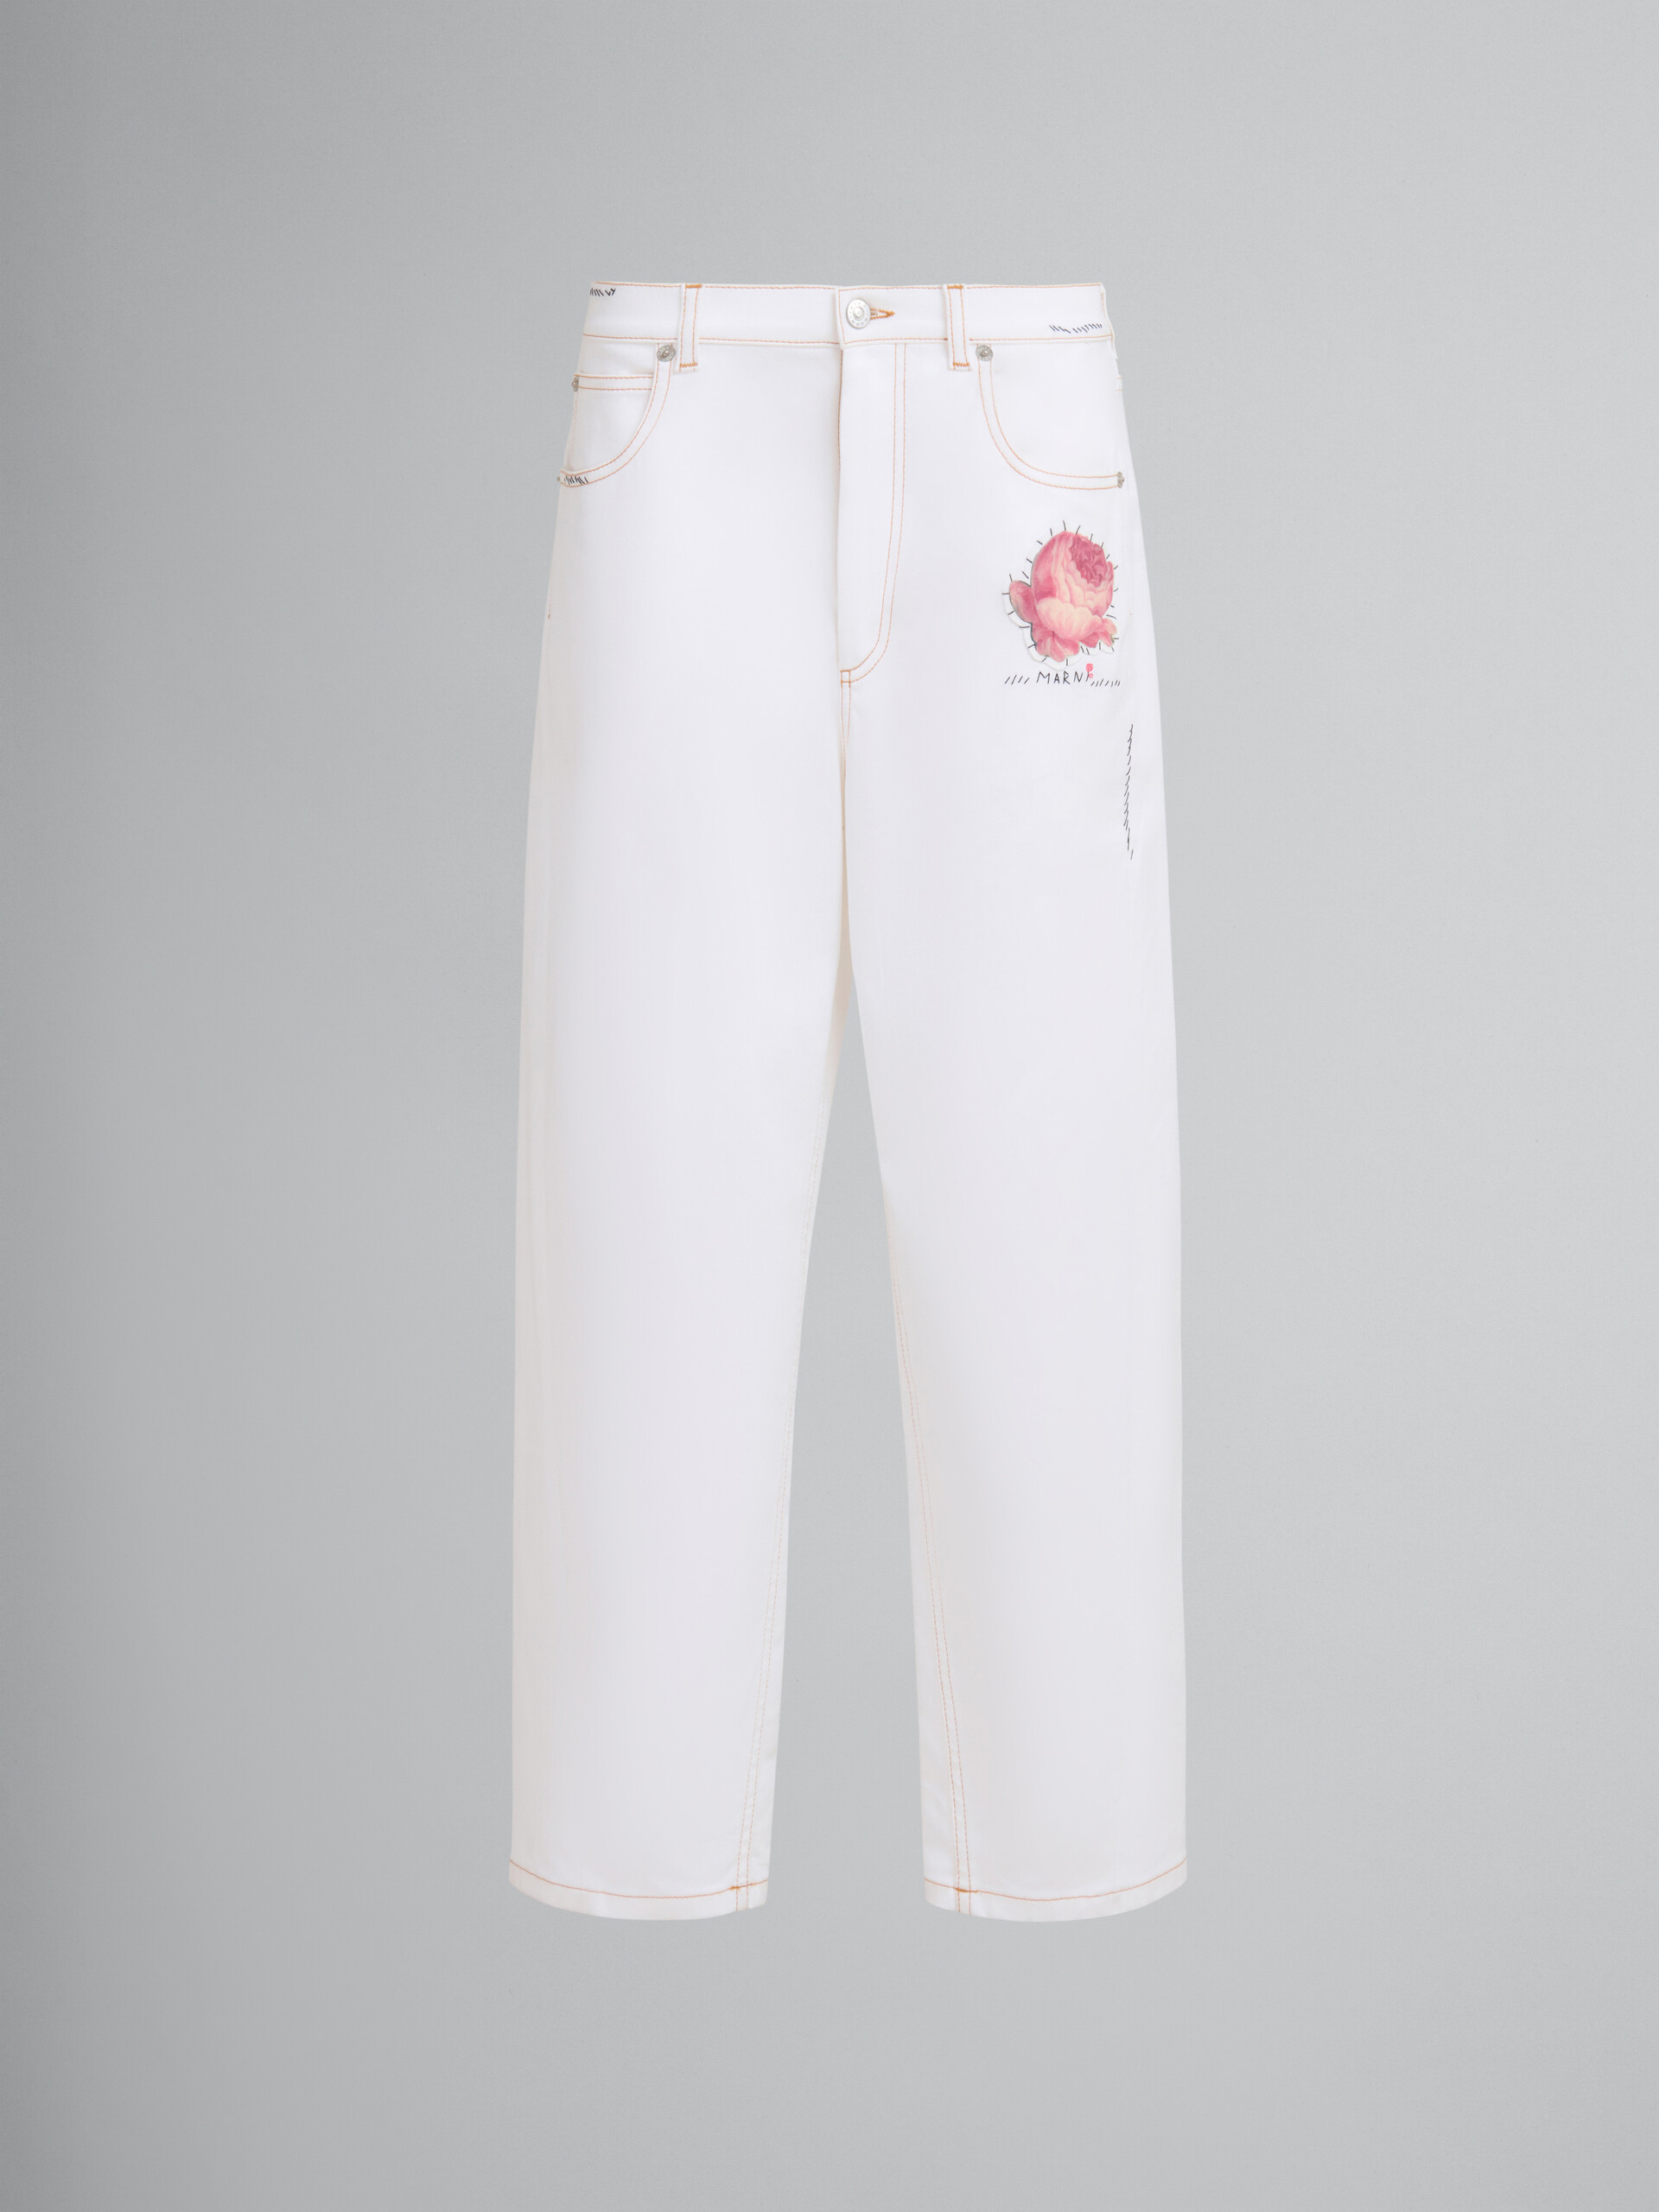 Pantaloni in denim bianco con applicazione a fiore - Pantaloni - Image 1